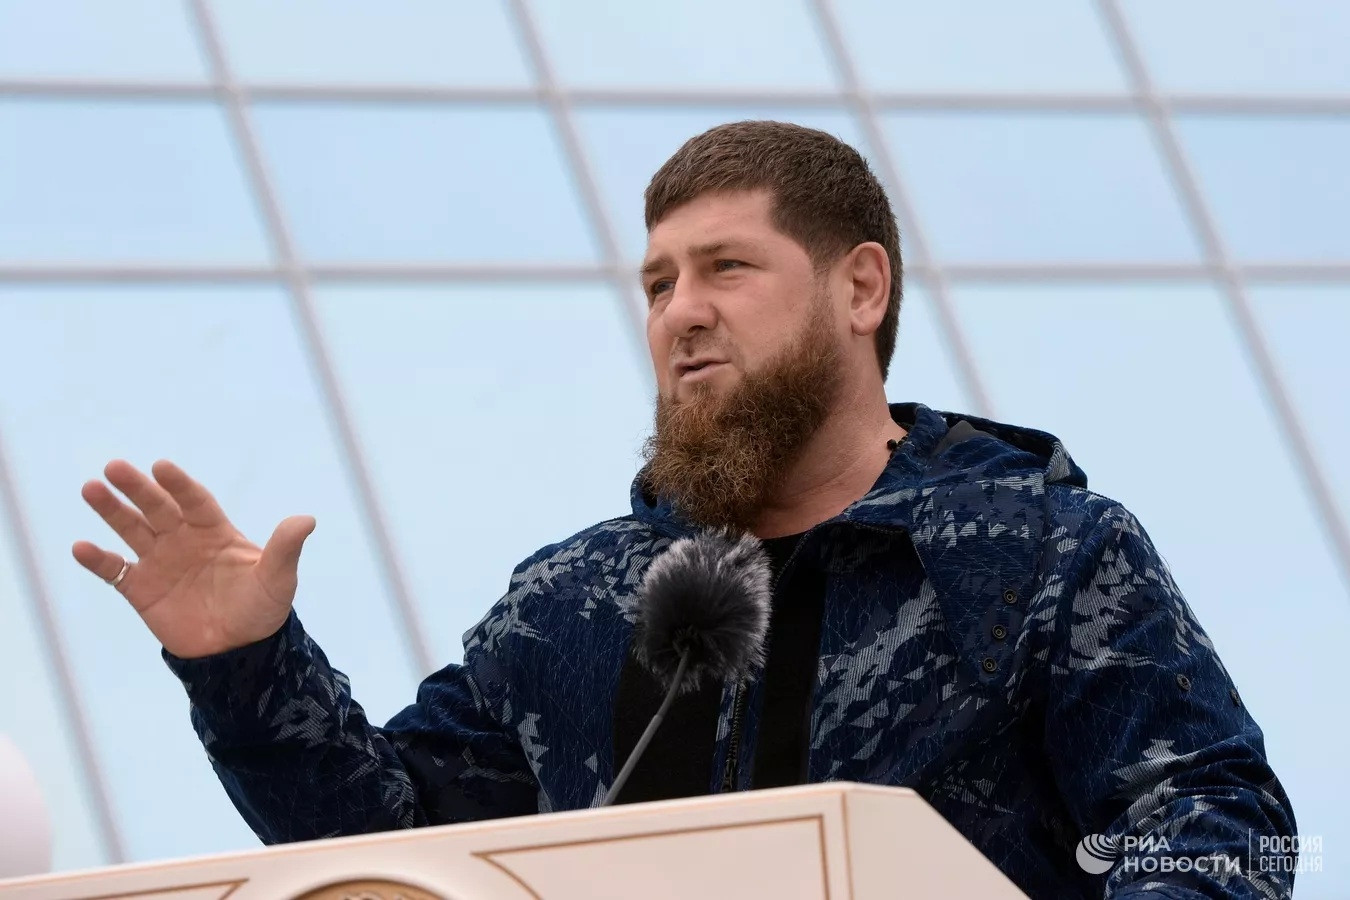 Lãnh đạo Chechnya sẵn sàng đưa quân đến Belgorod, Kiev kiểm tra hầm tránh bom